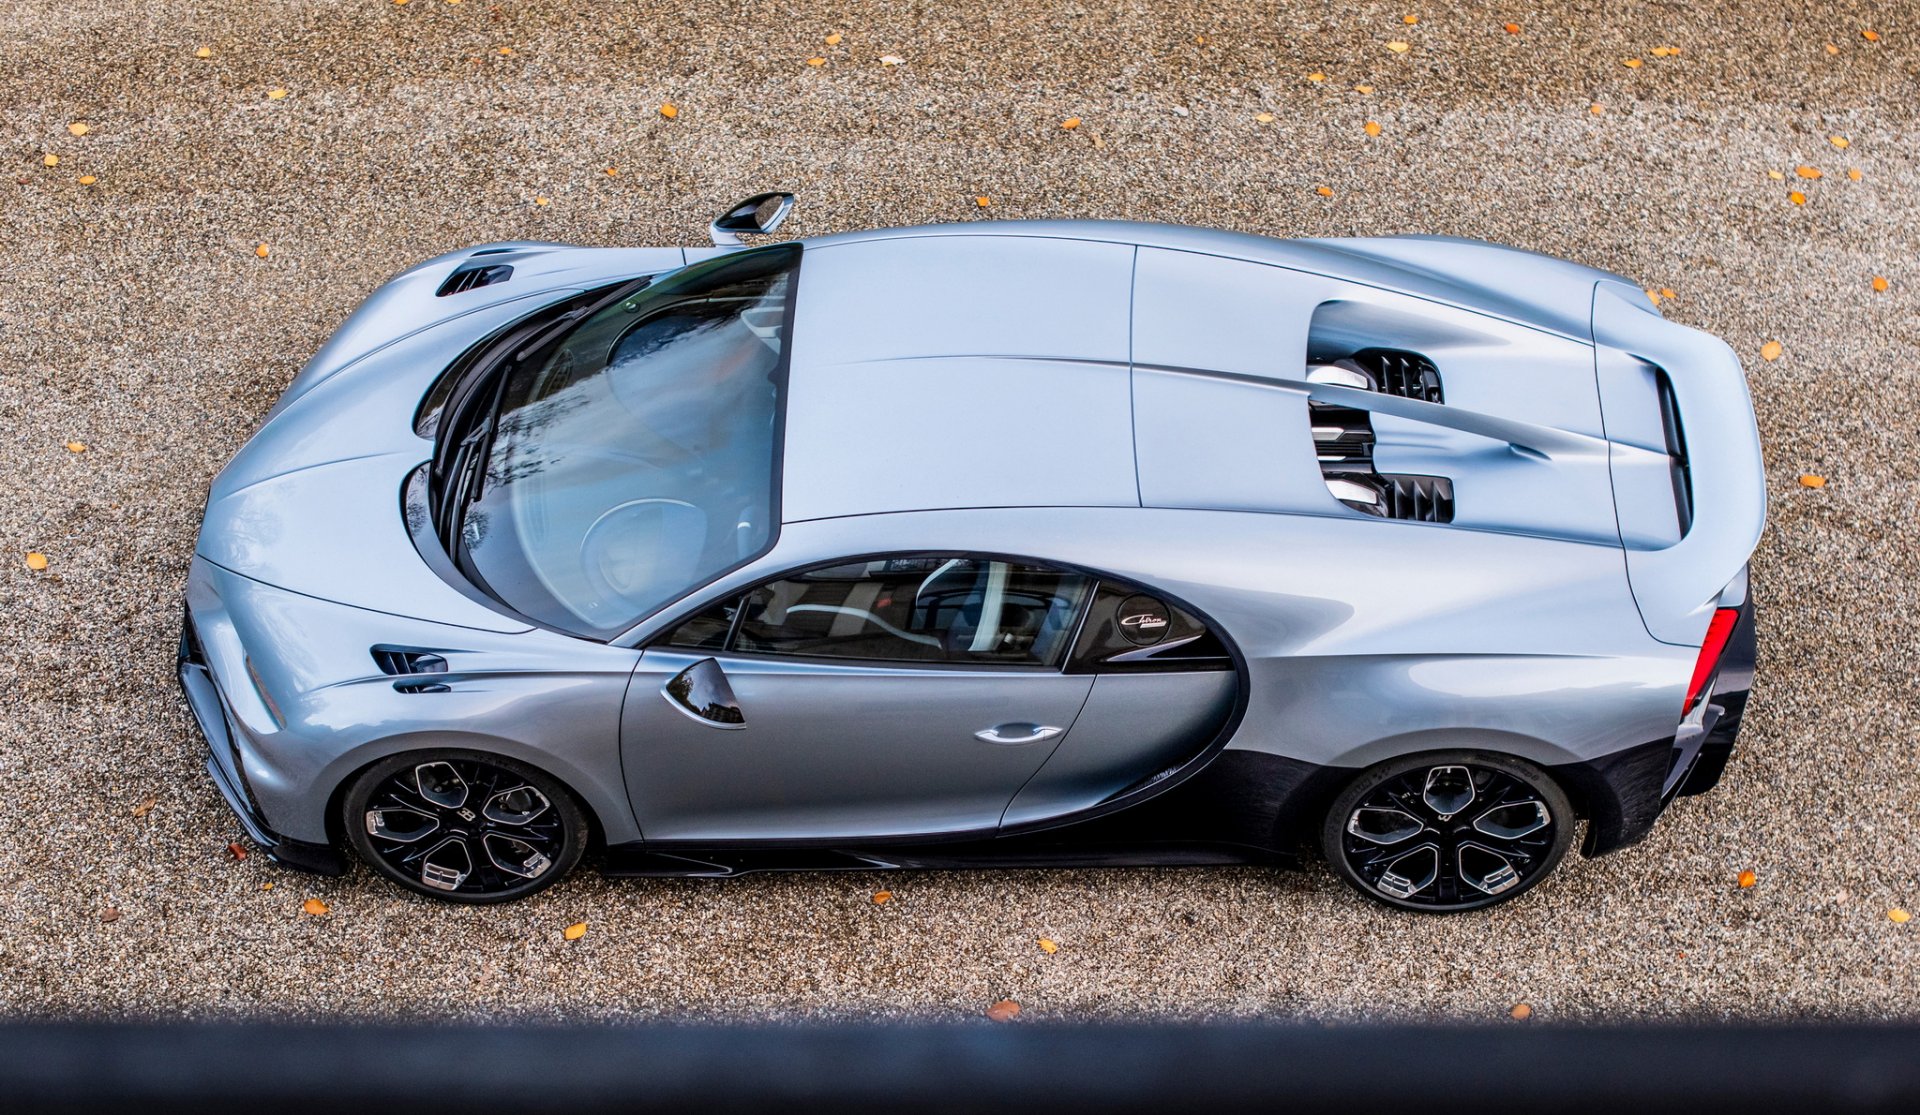 คันเดียวในโลก!! Bugatti Chiron Profilée ใครอยากได้ต้องแย่งประมูลเท่านั้น 